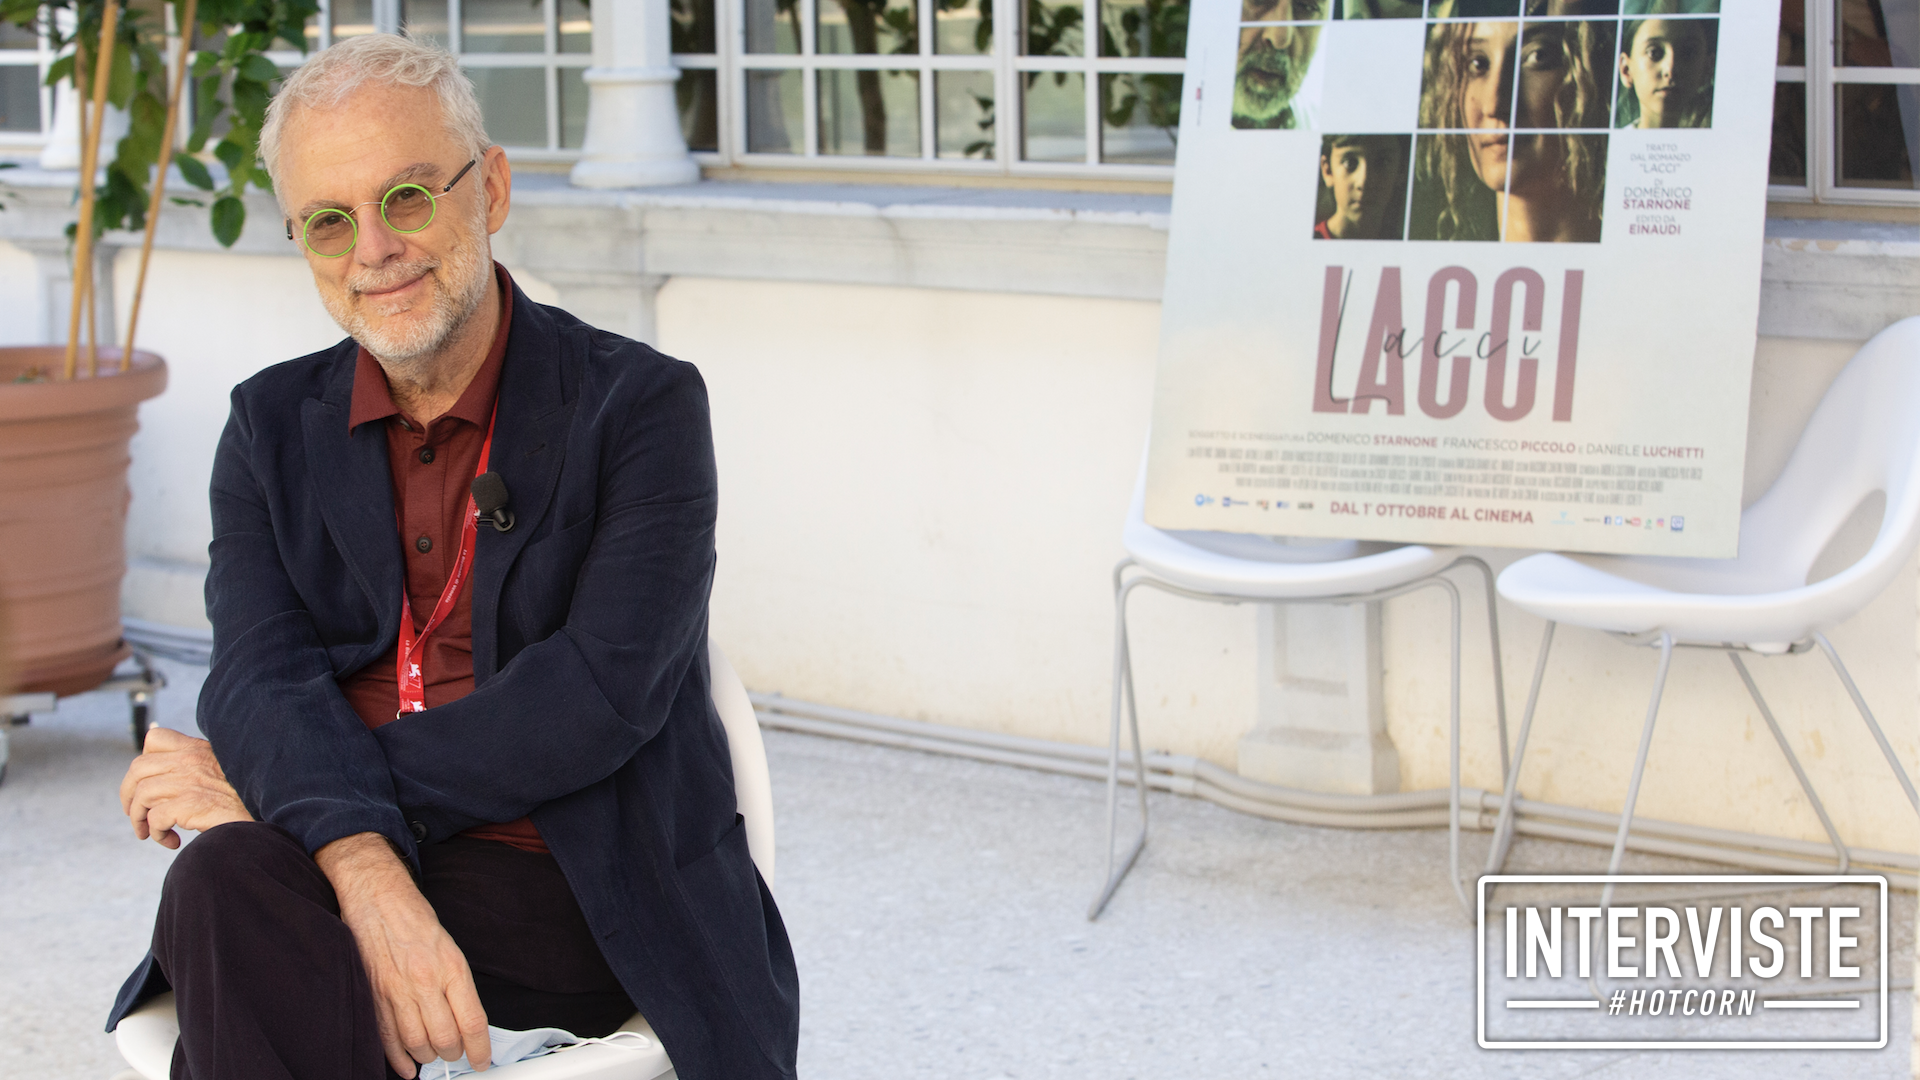 Intervista a Domenico Starnone sul libro Lacci da cui è tratto il film